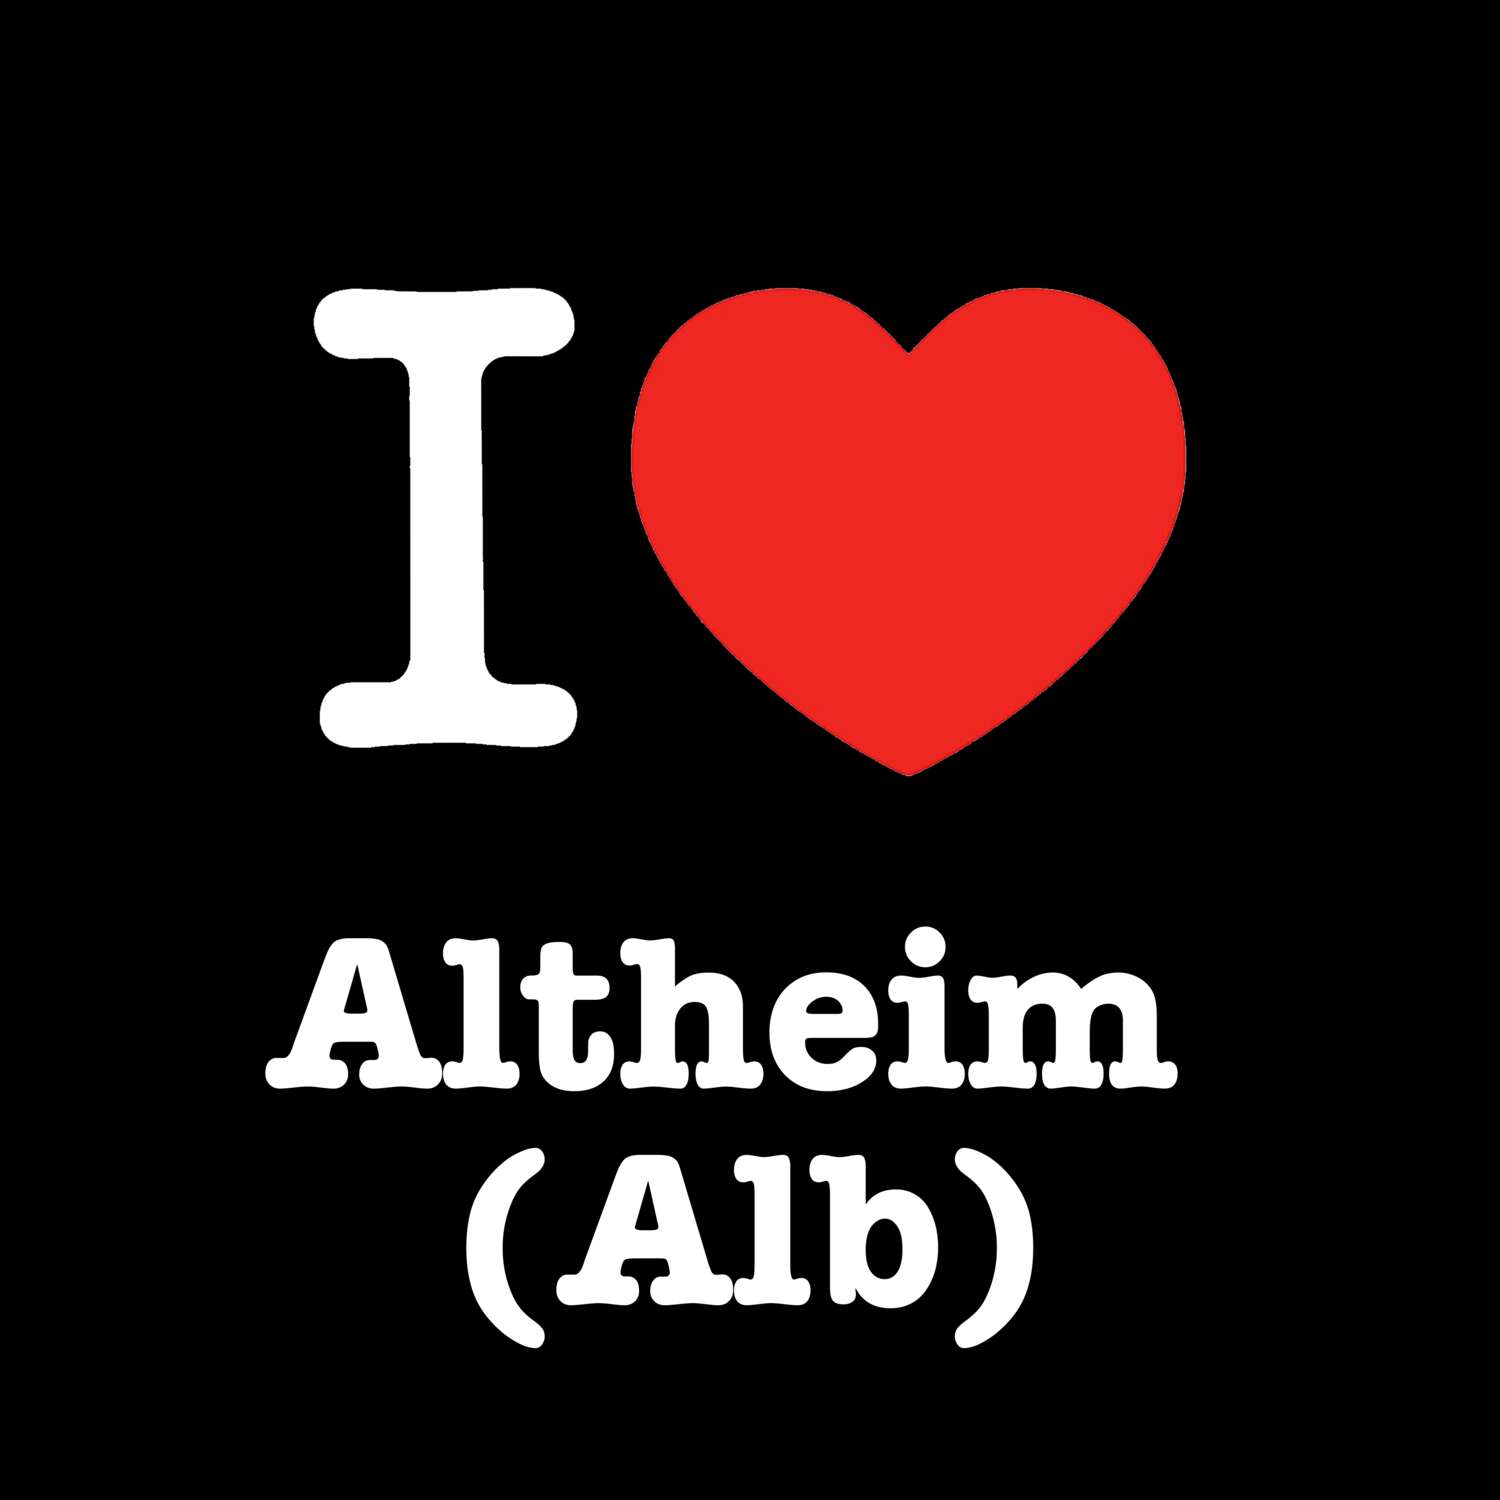 Altheim (Alb) T-Shirt »I love«